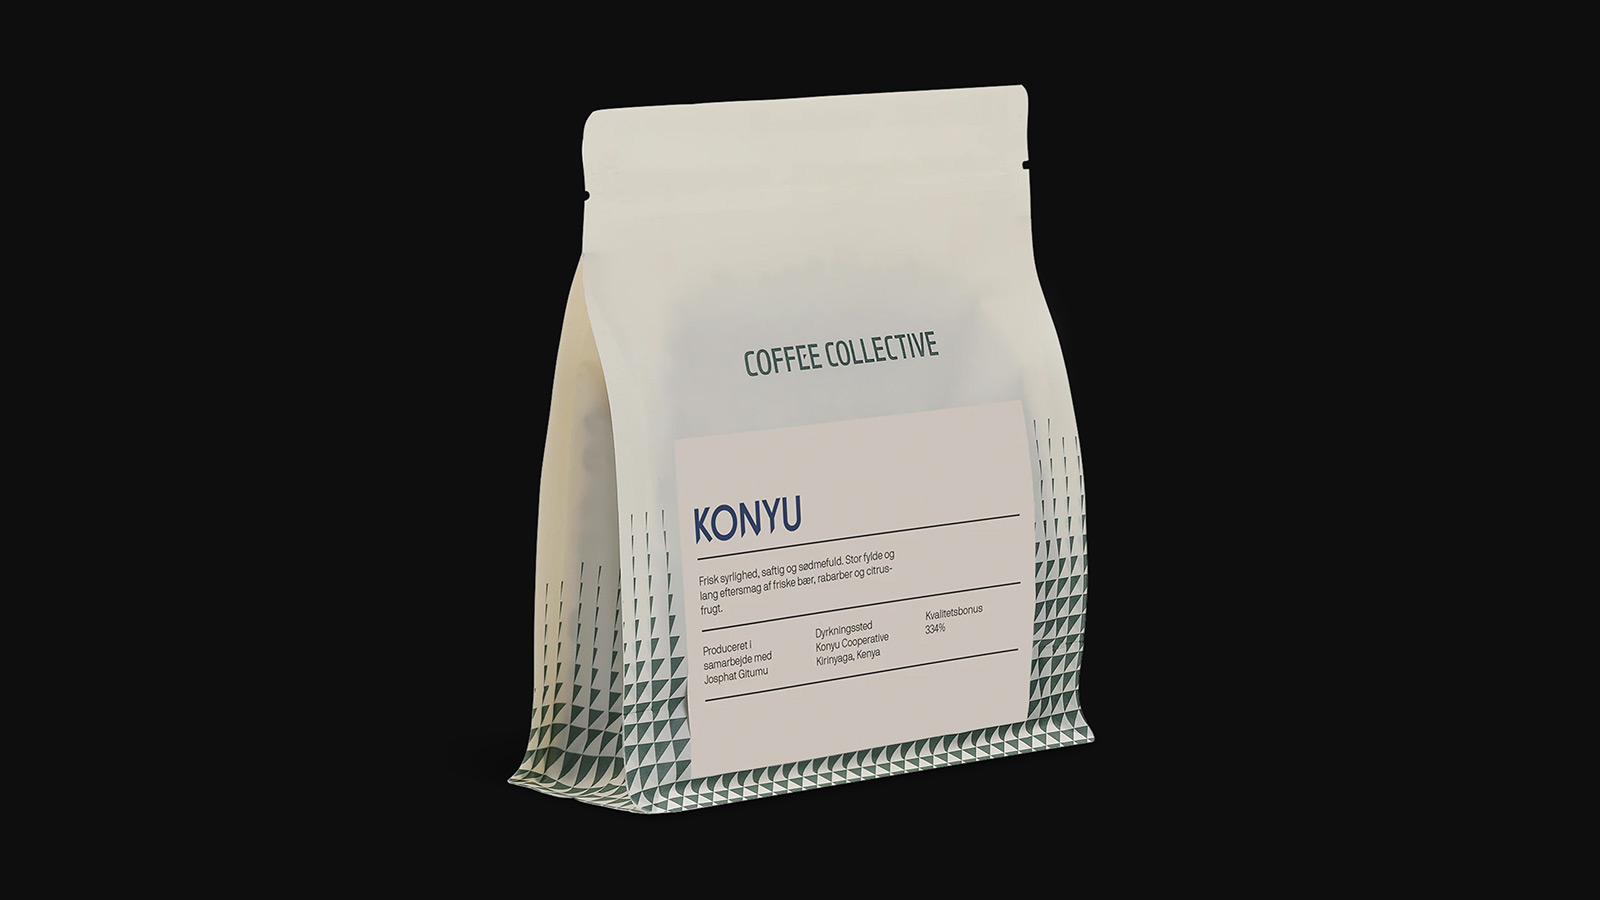 Coffee Collective Konyu Coffee